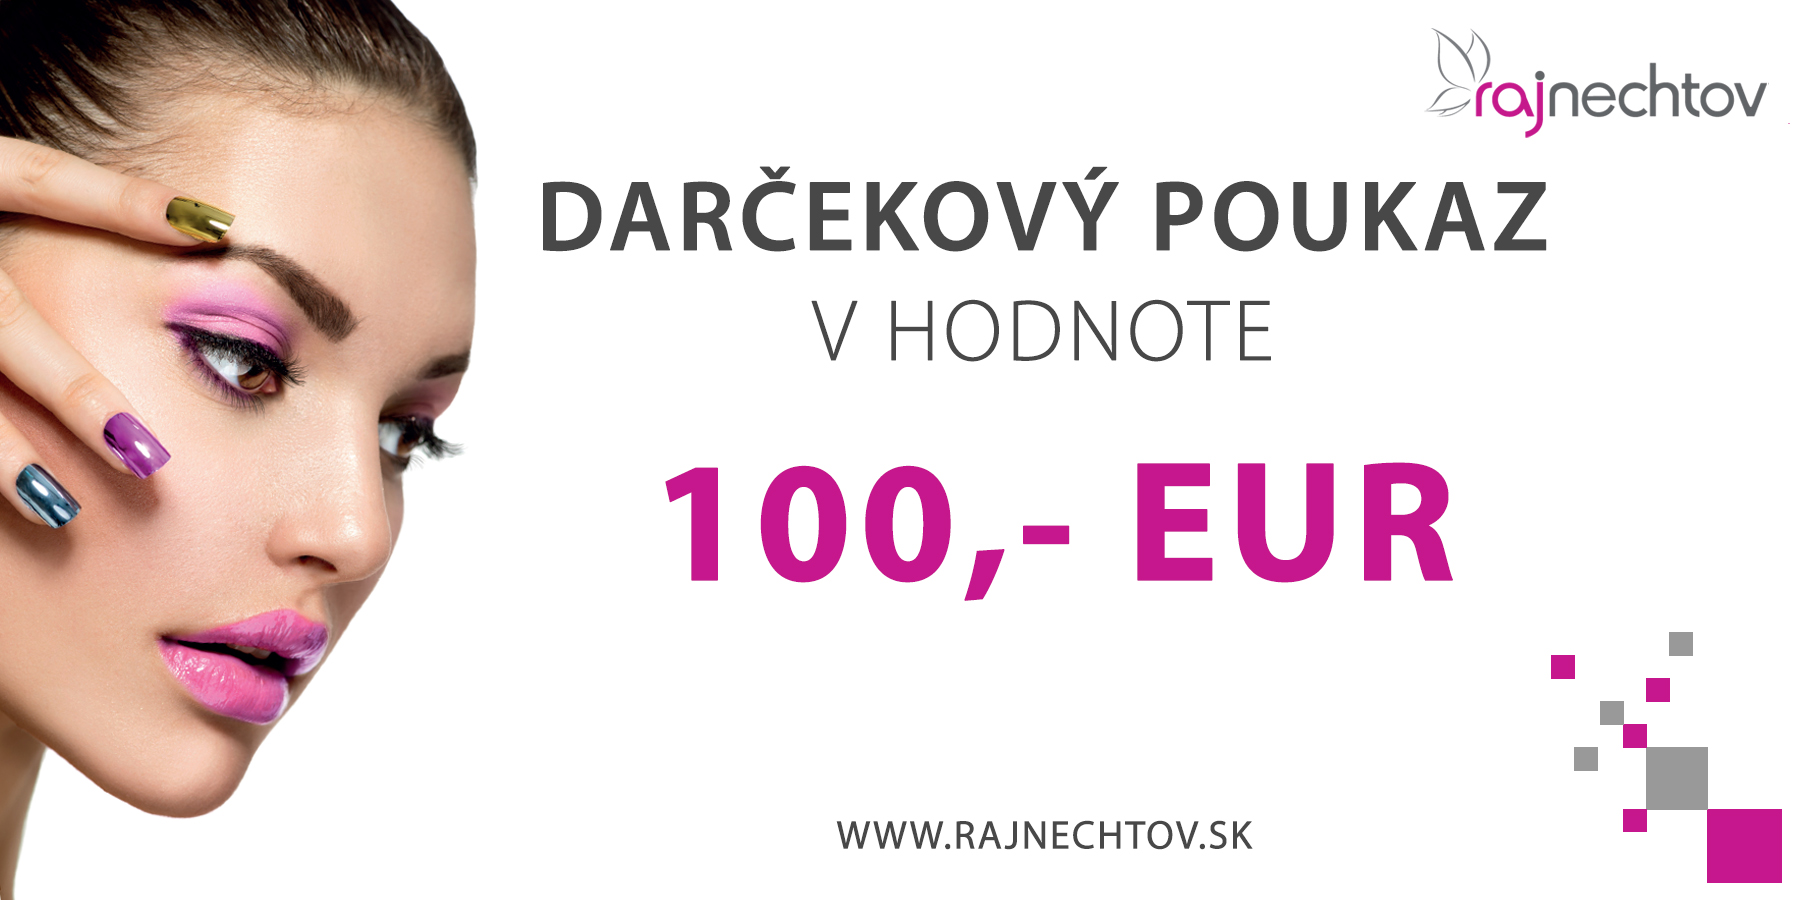 E-shop Darčekový poukaz 100 EUR